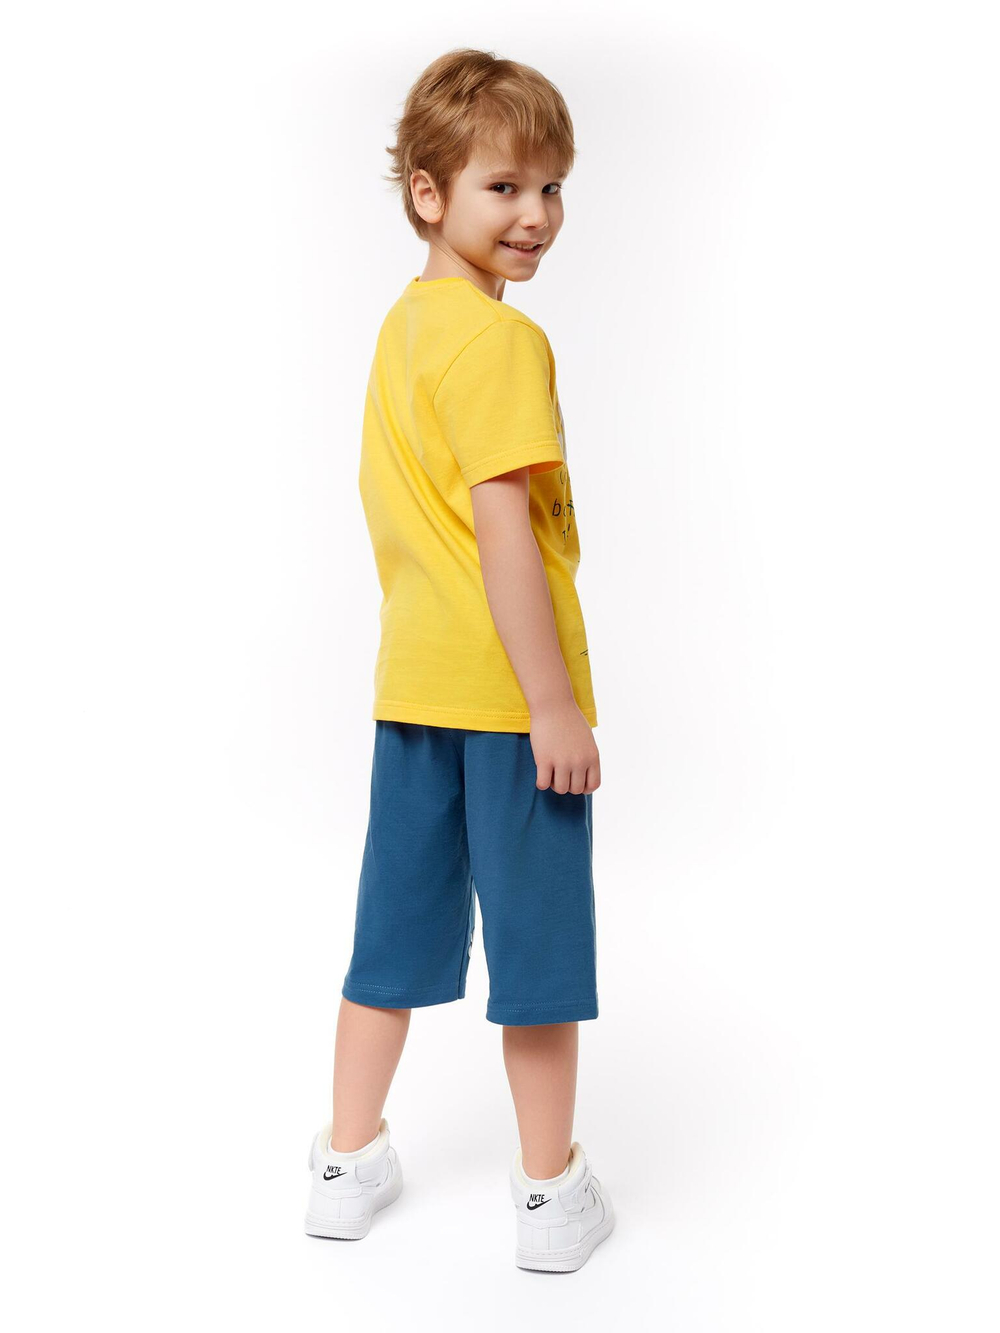 01-122-1 Комплект фуфайка+шорты для мальчика Luneva.